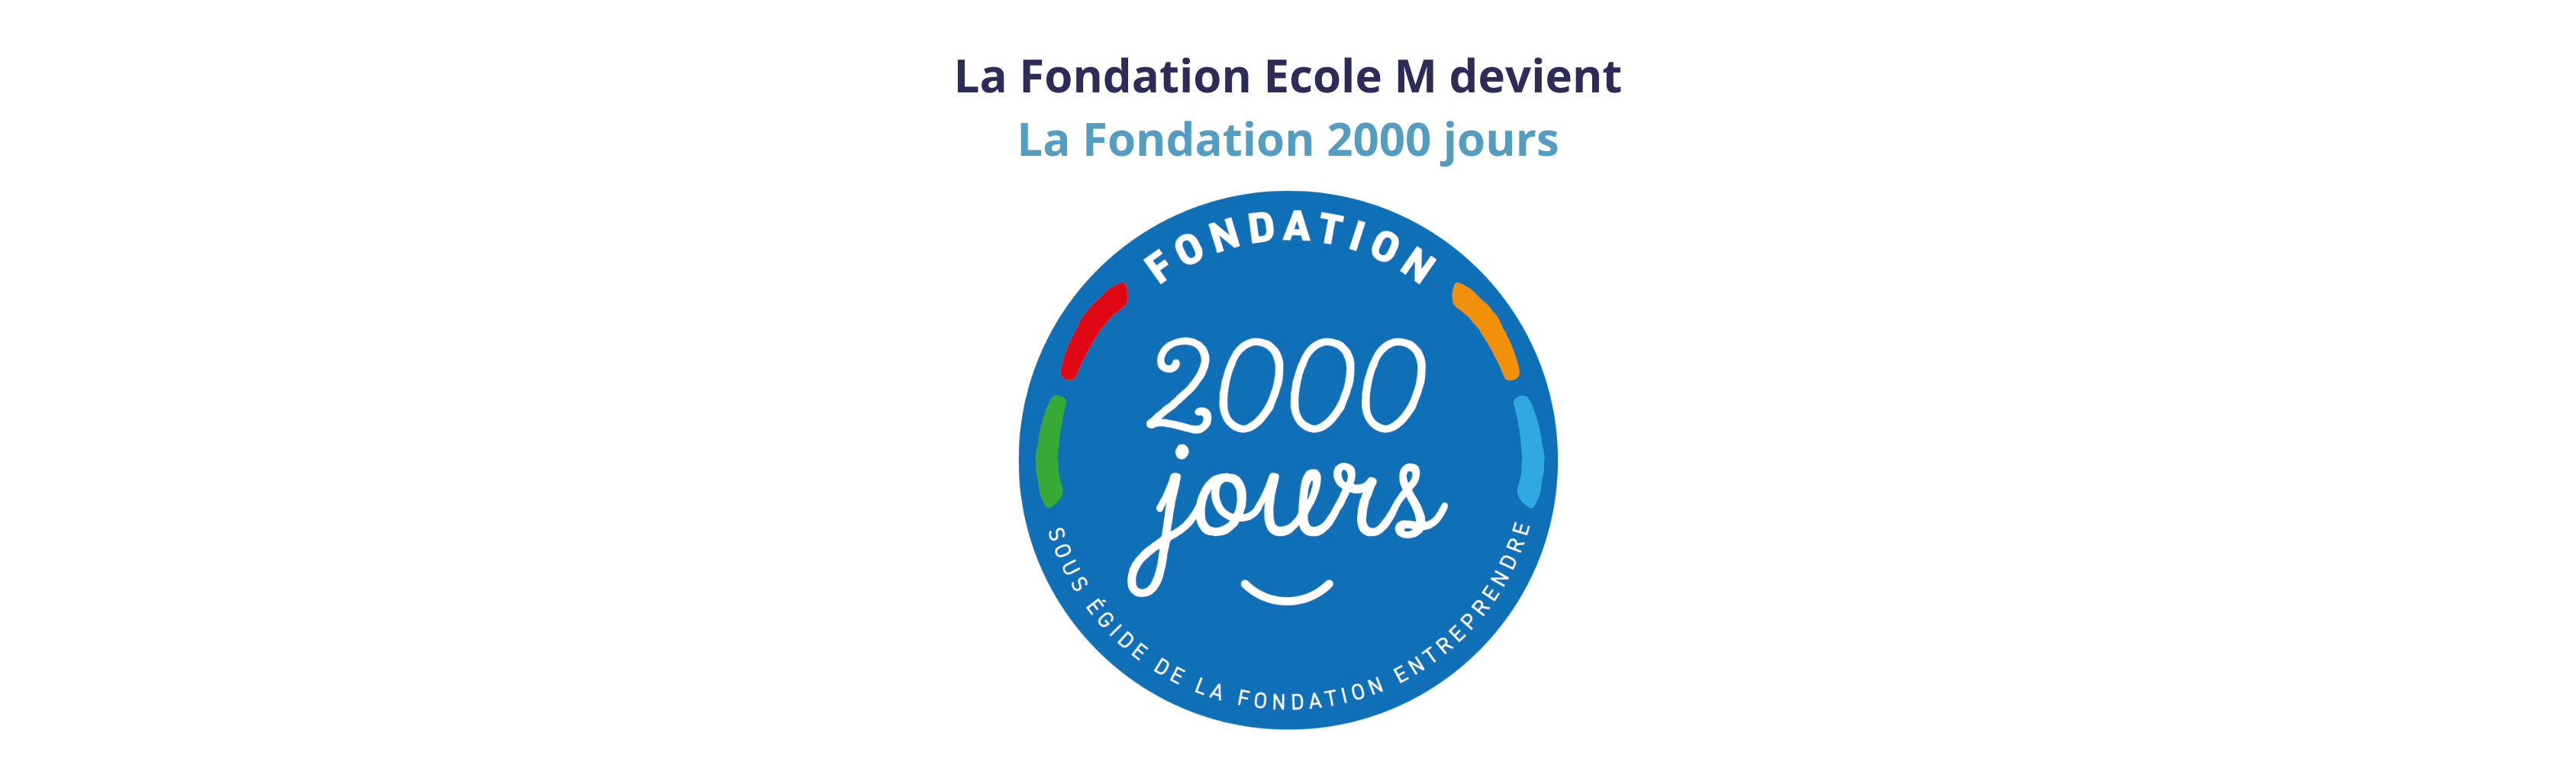 Fondation 2000 jours -V1.png